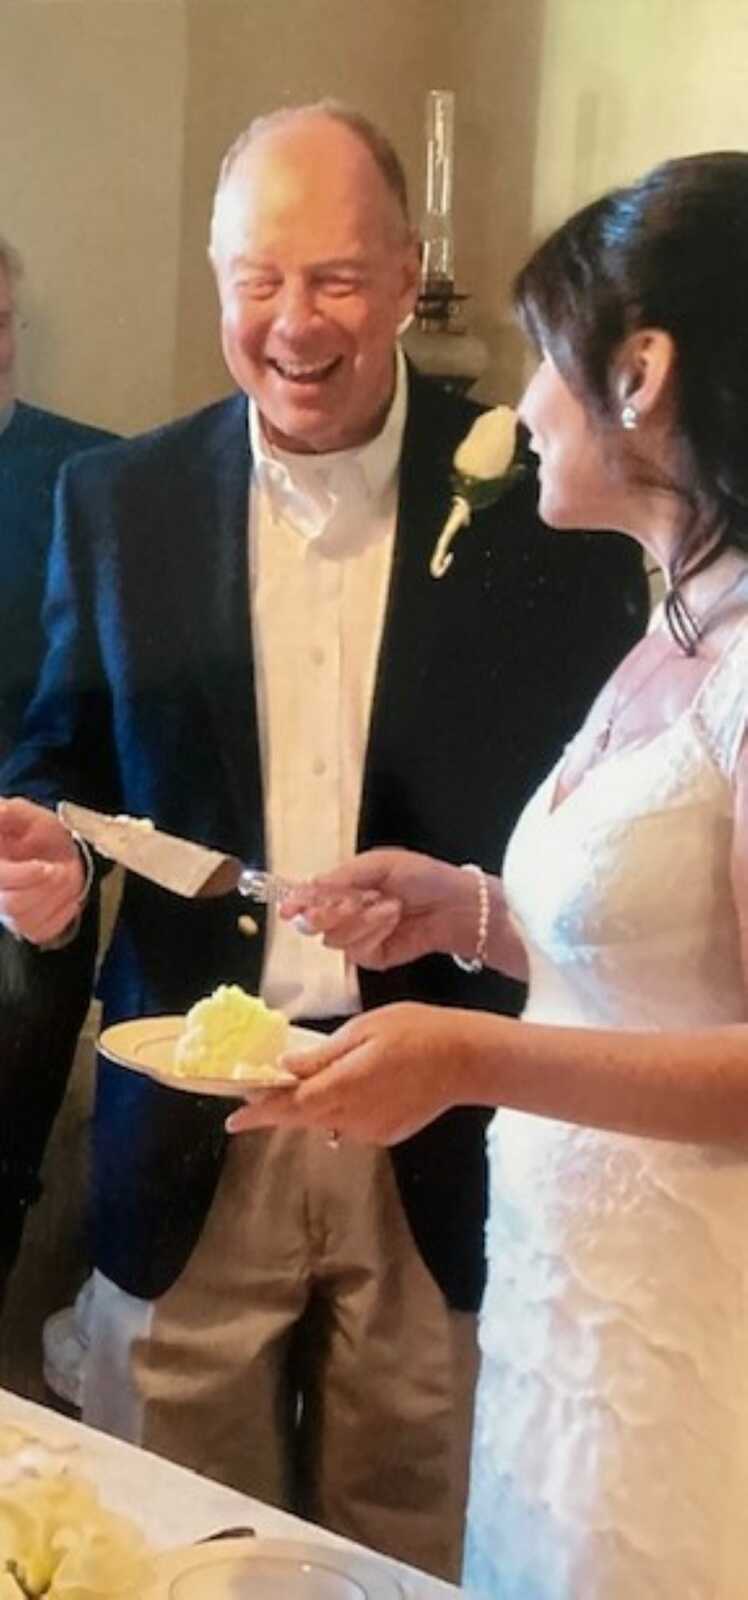 Newlyweds cut their wedding cake at their wedding reception